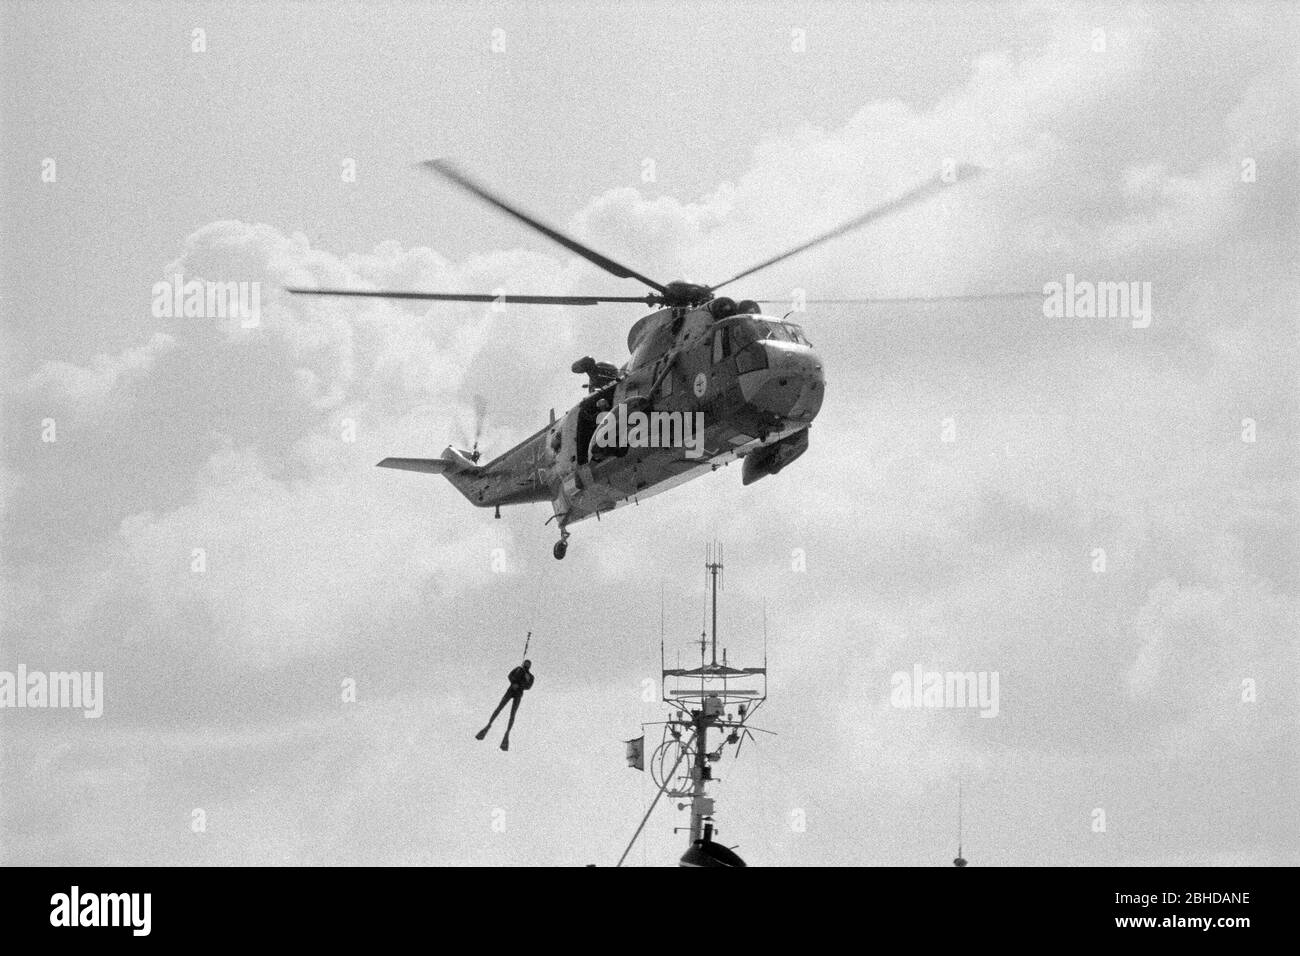 Sar Elicottero della Marina tedesca in volo di prova, 23 agosto 1981, Borkum Navy base, bassa Sassonia, Germania Foto Stock